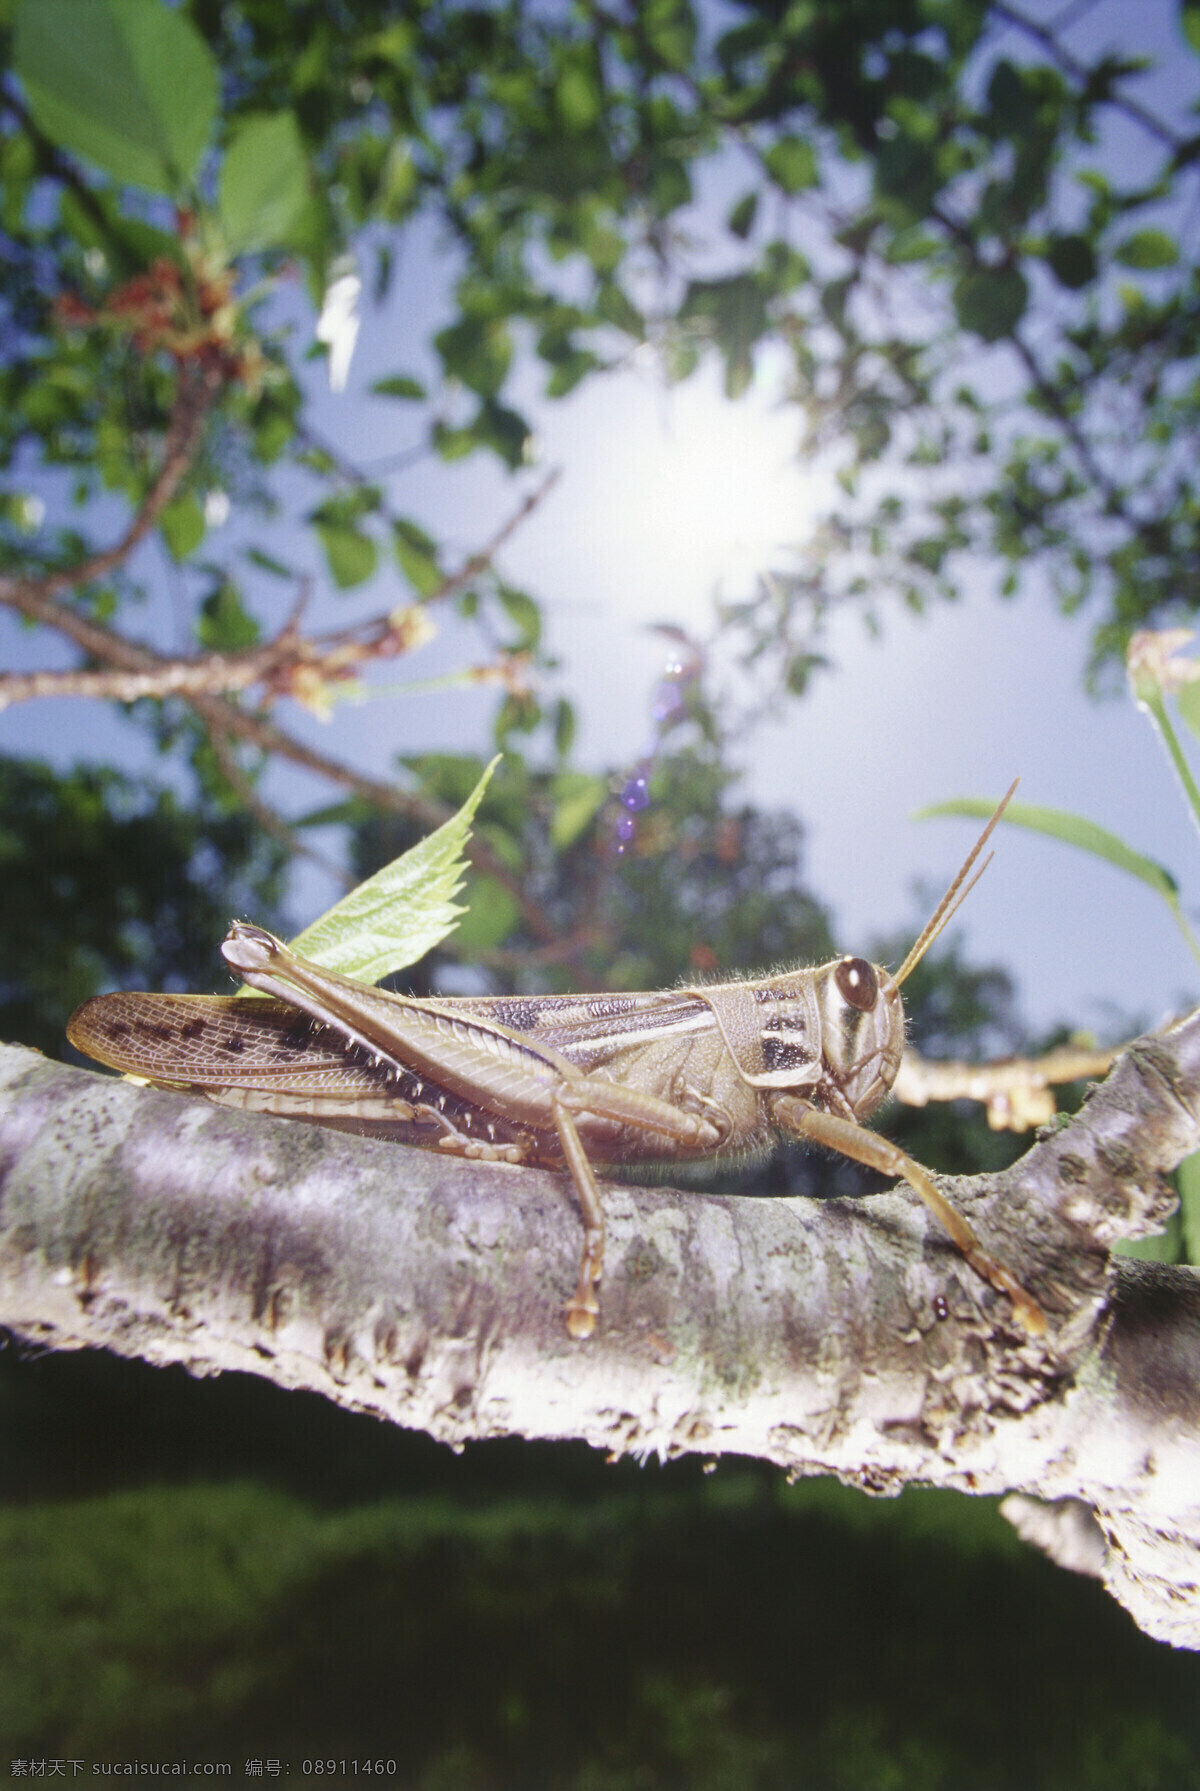 蝗虫 昆虫 害虫 秋天 自然摄影 生态摄影 微距 特写 生物世界 鲜花 花草树木 田园风景 昆虫世界